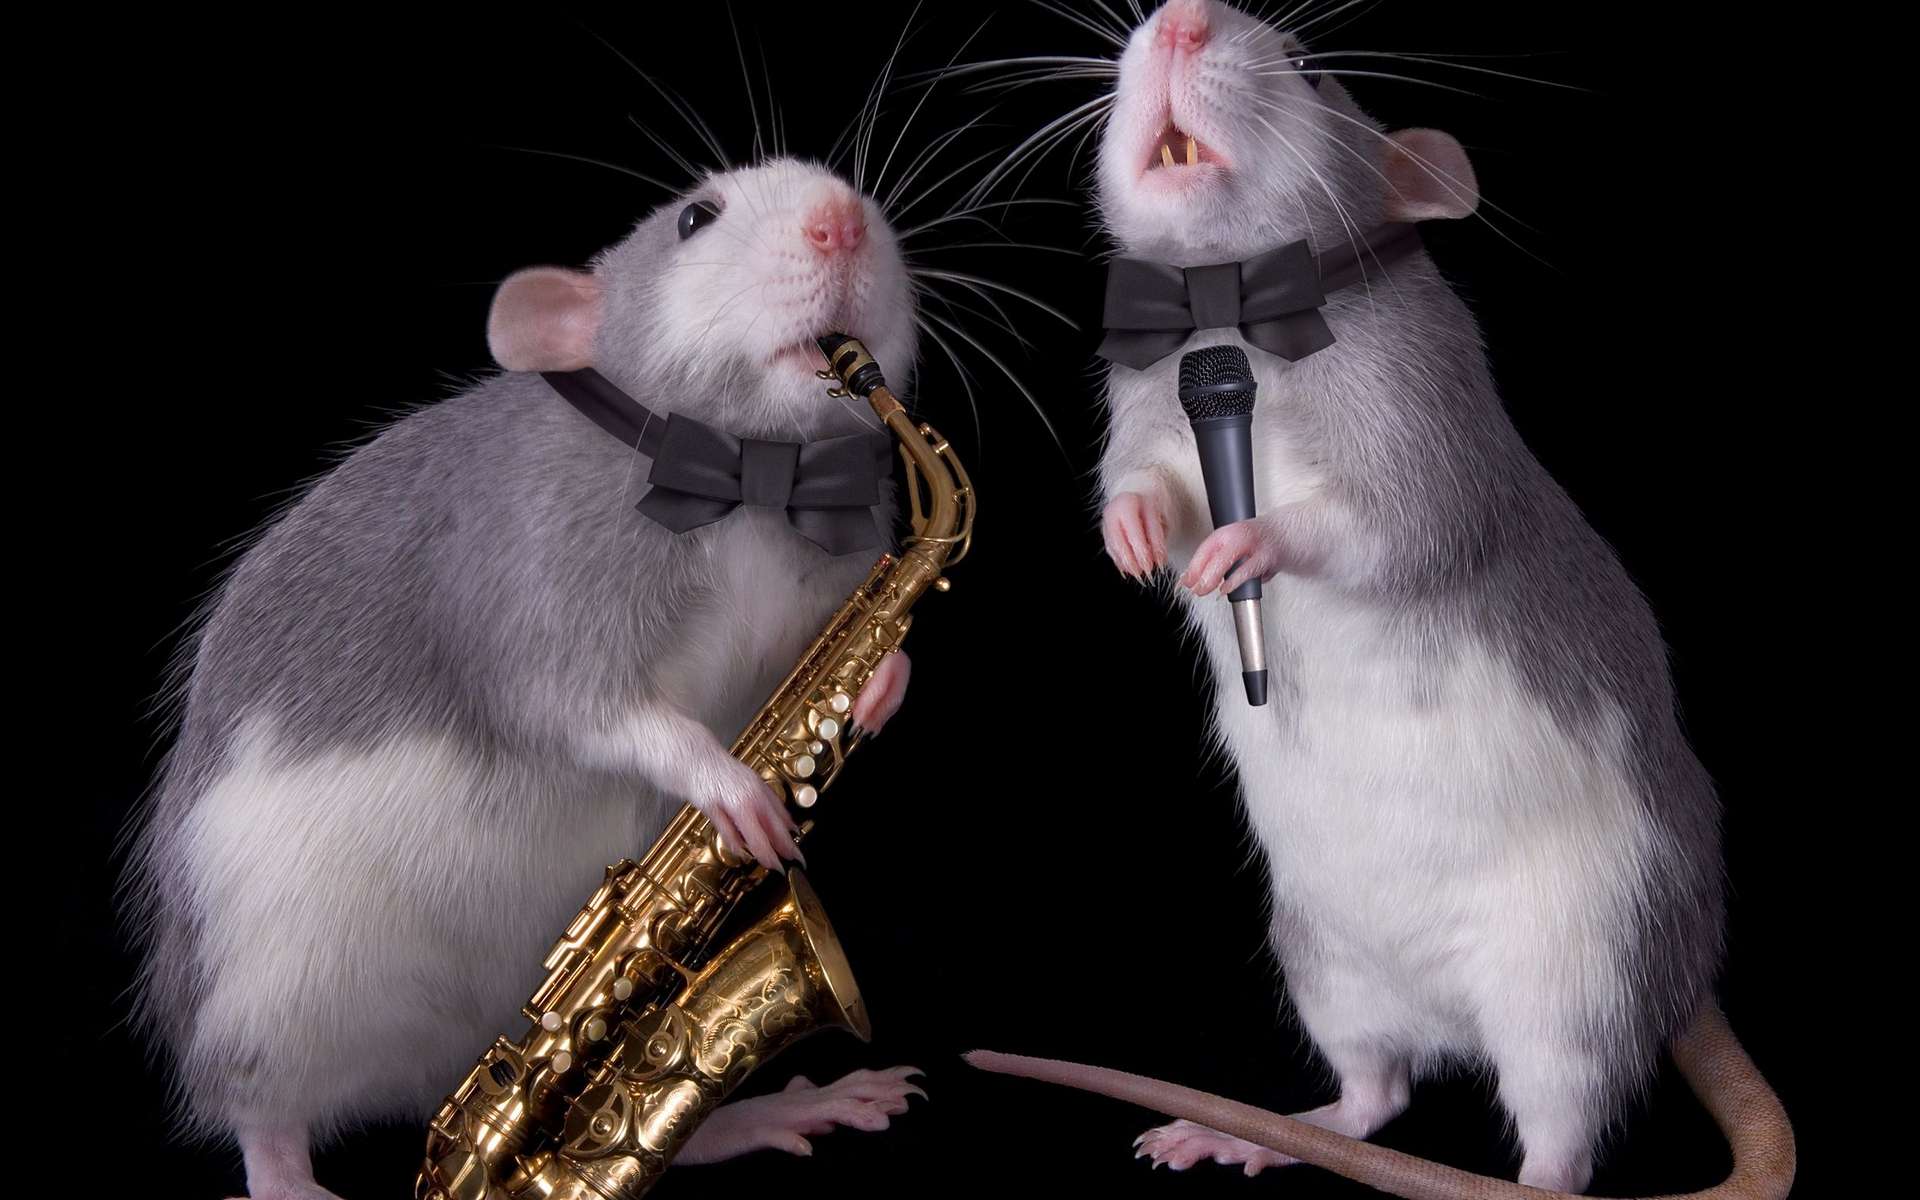 Les rats aussi bougent en rythme sur la musique